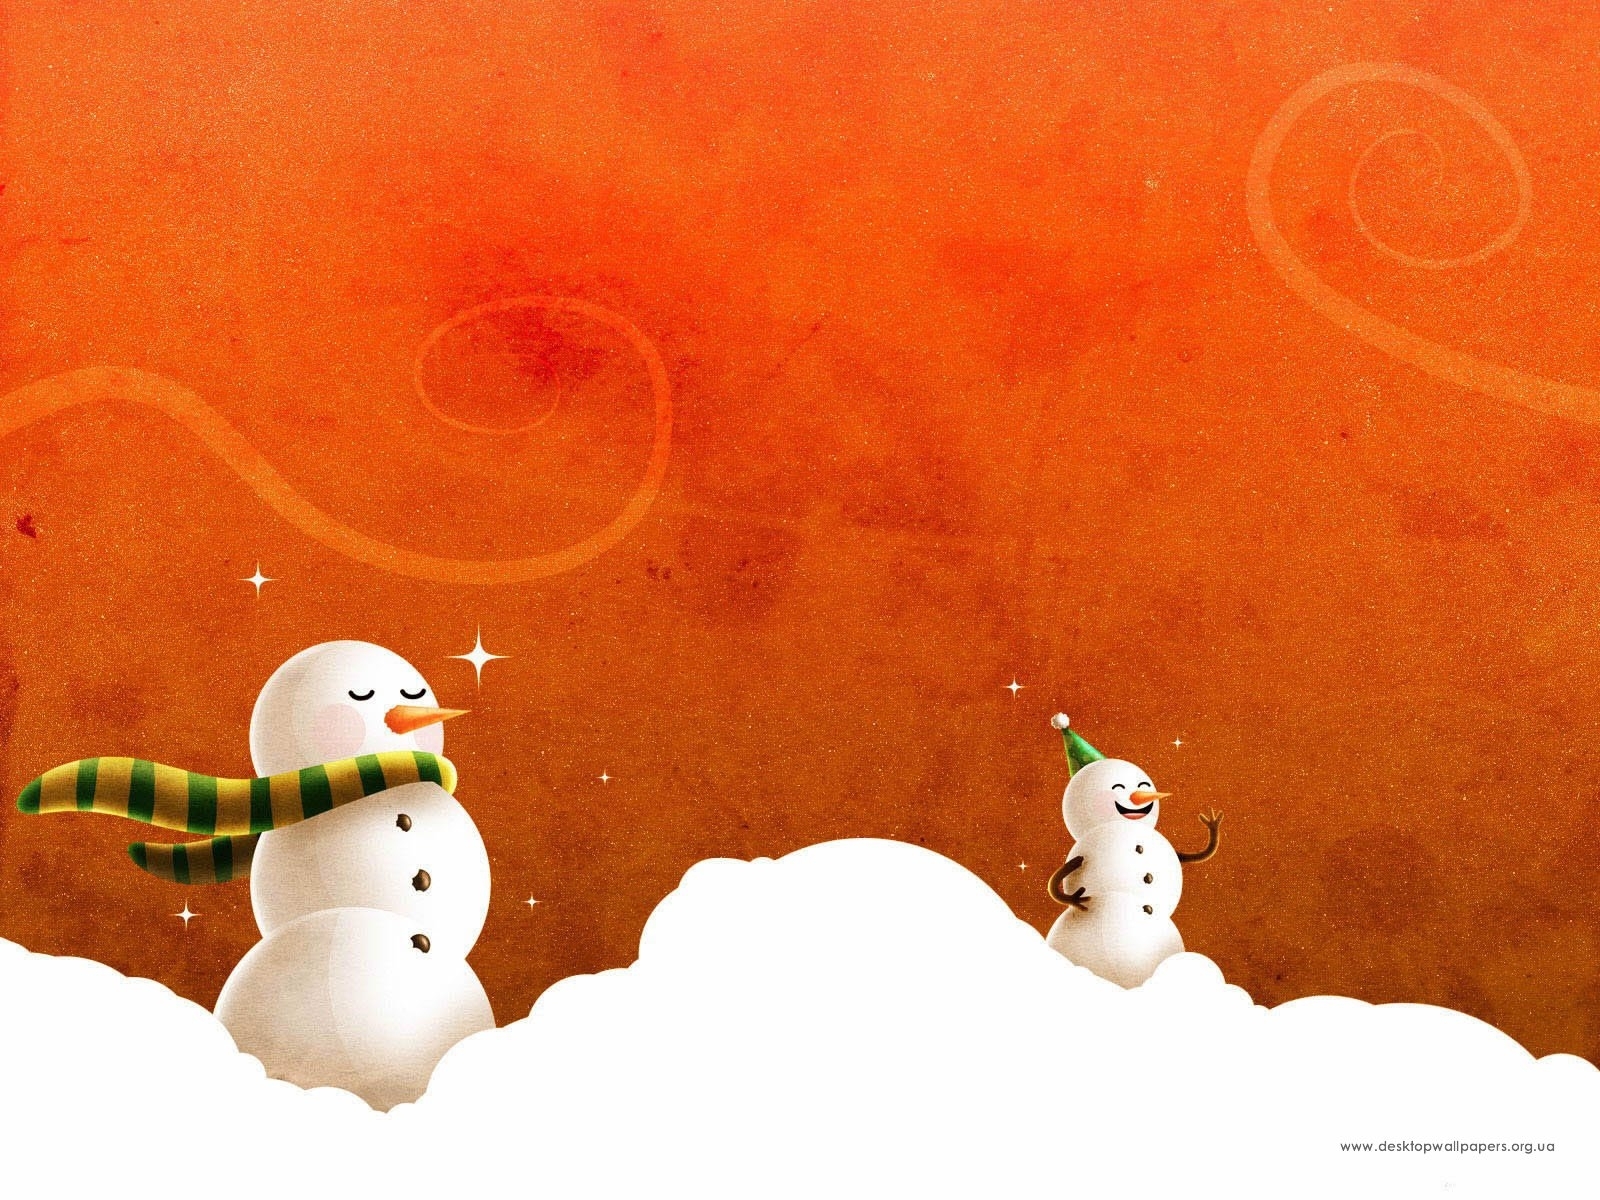 Скачать обои бесплатно Рождество (Christmas Xmas), Новый Год (New Year), Зима, Рисунки картинка на рабочий стол ПК